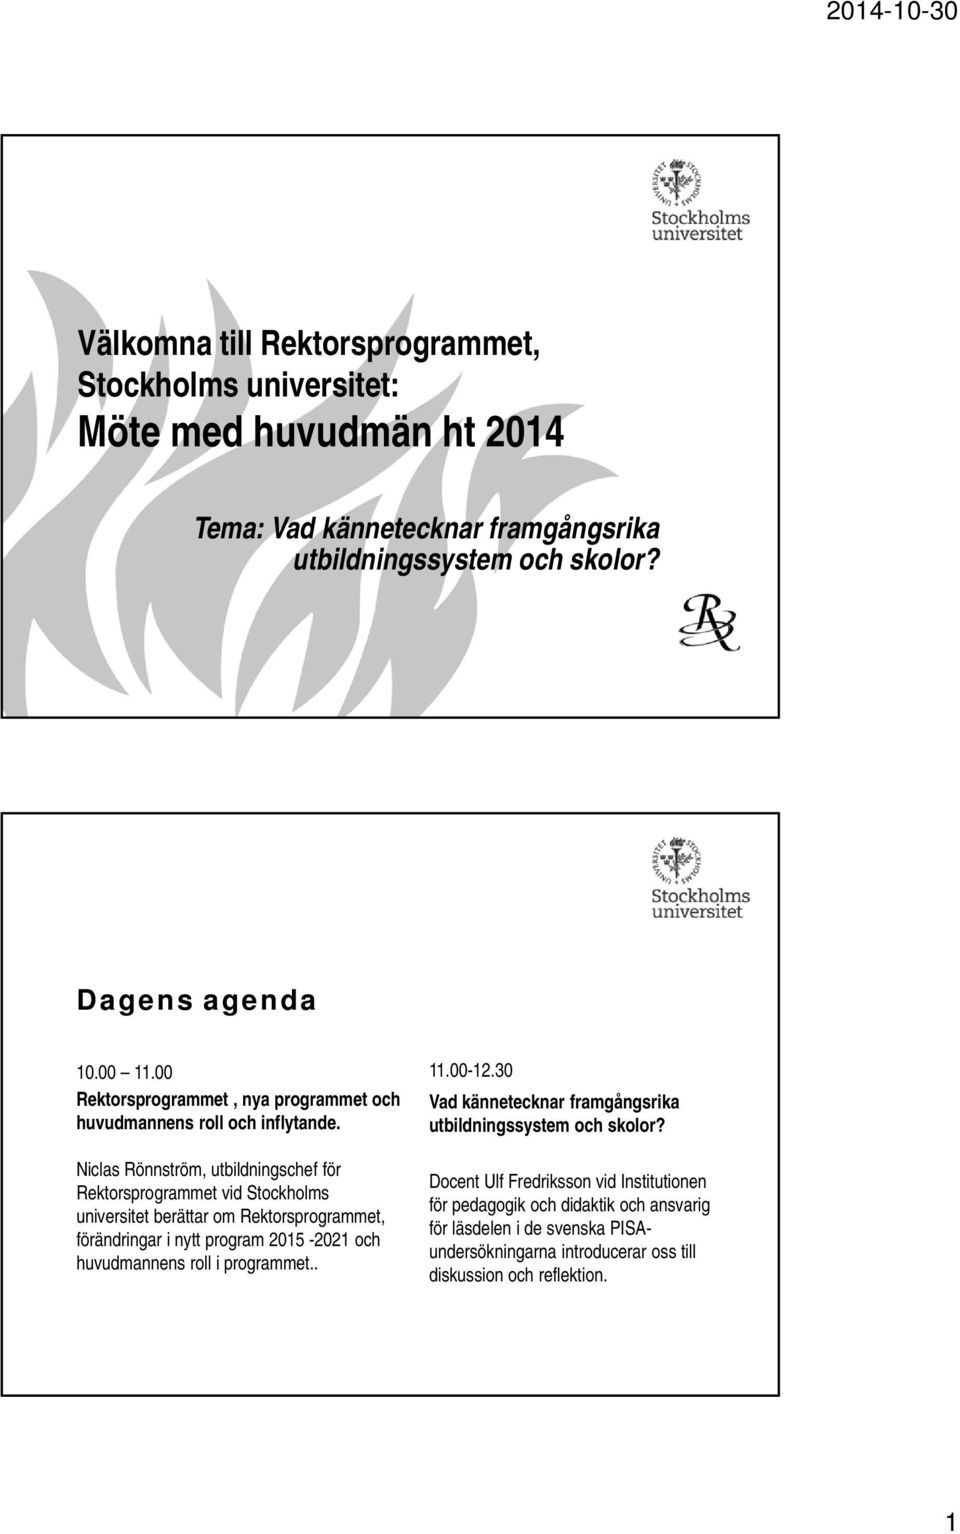 Niclas Rönnström, utbildningschef för Rektorsprogrammet vid Stockholms universitet berättar om Rektorsprogrammet, förändringar i nytt program 2015-2021 och huvudmannens